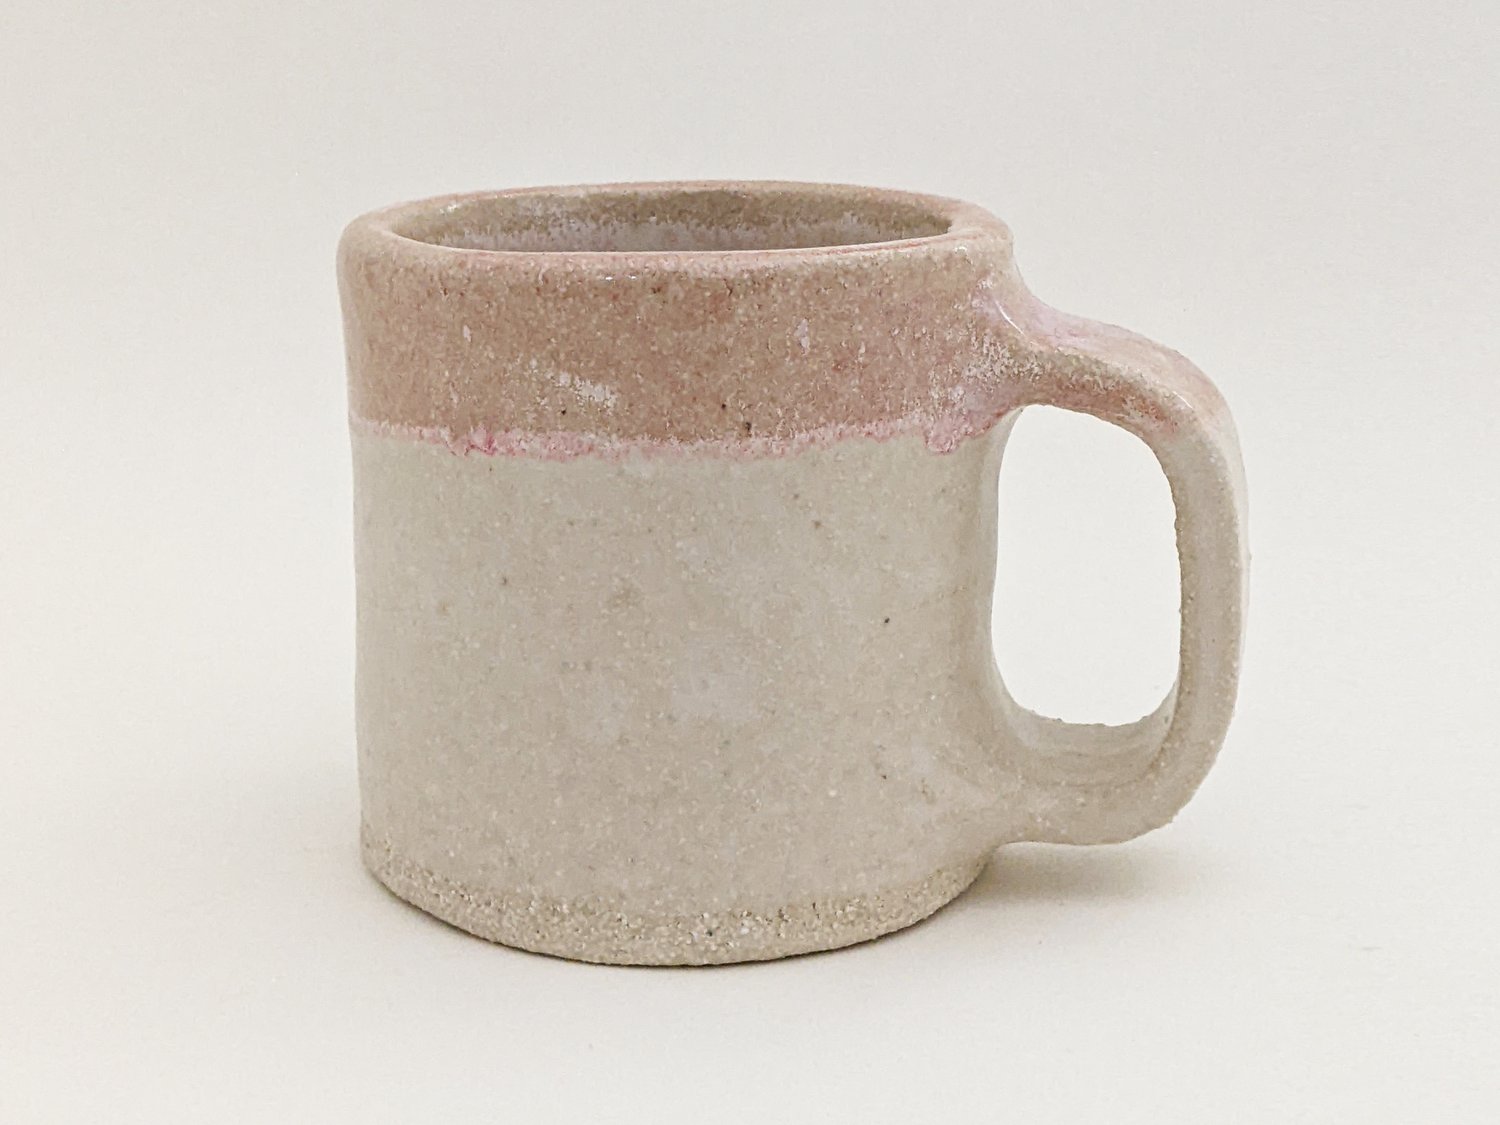 Image of pink icing mug